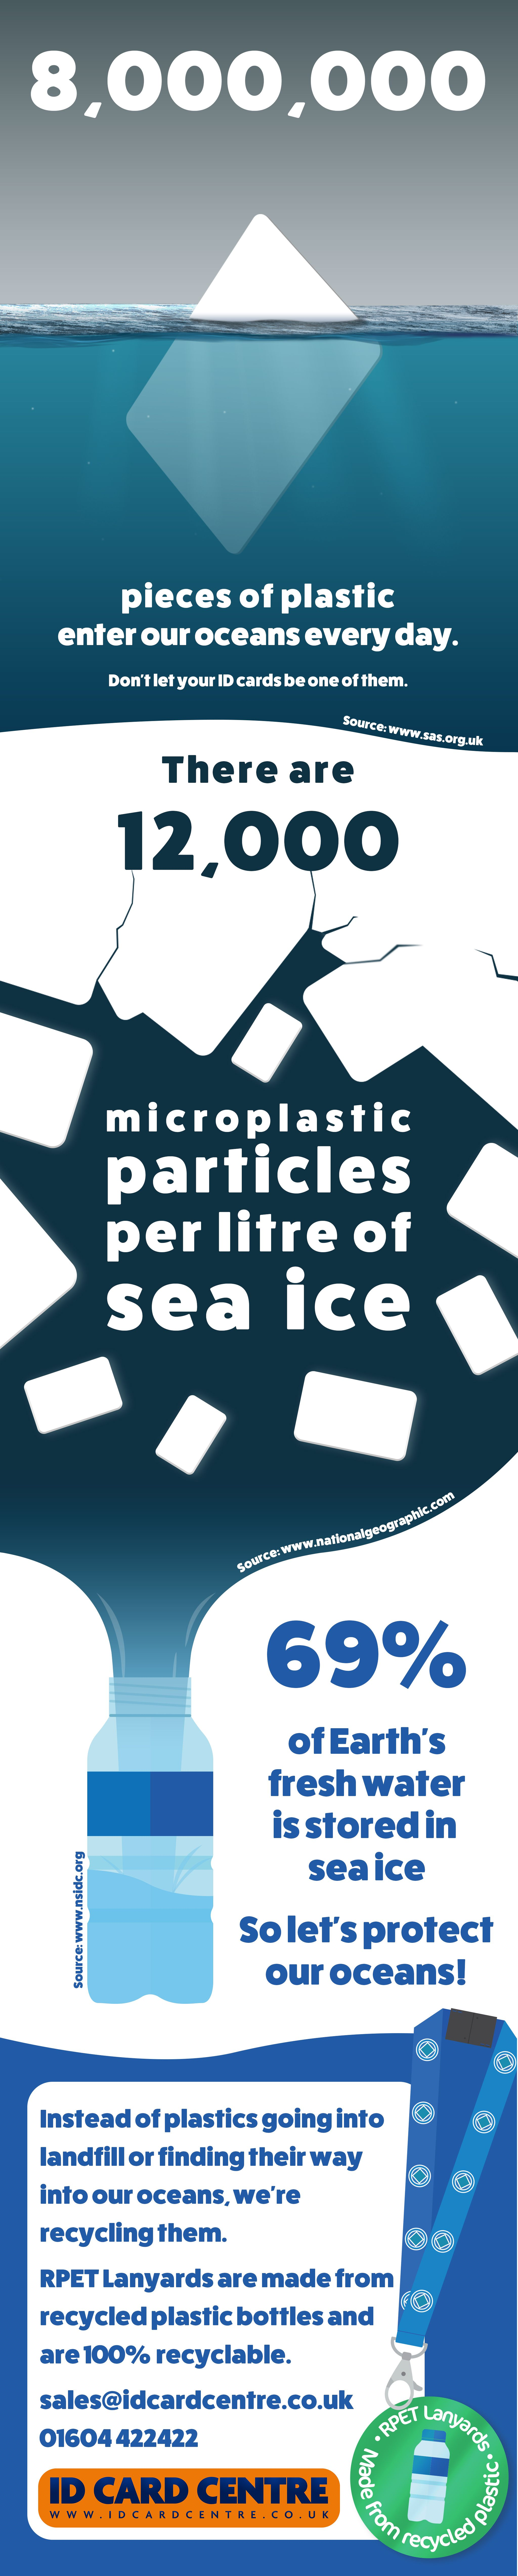 Ocean pollution statistics